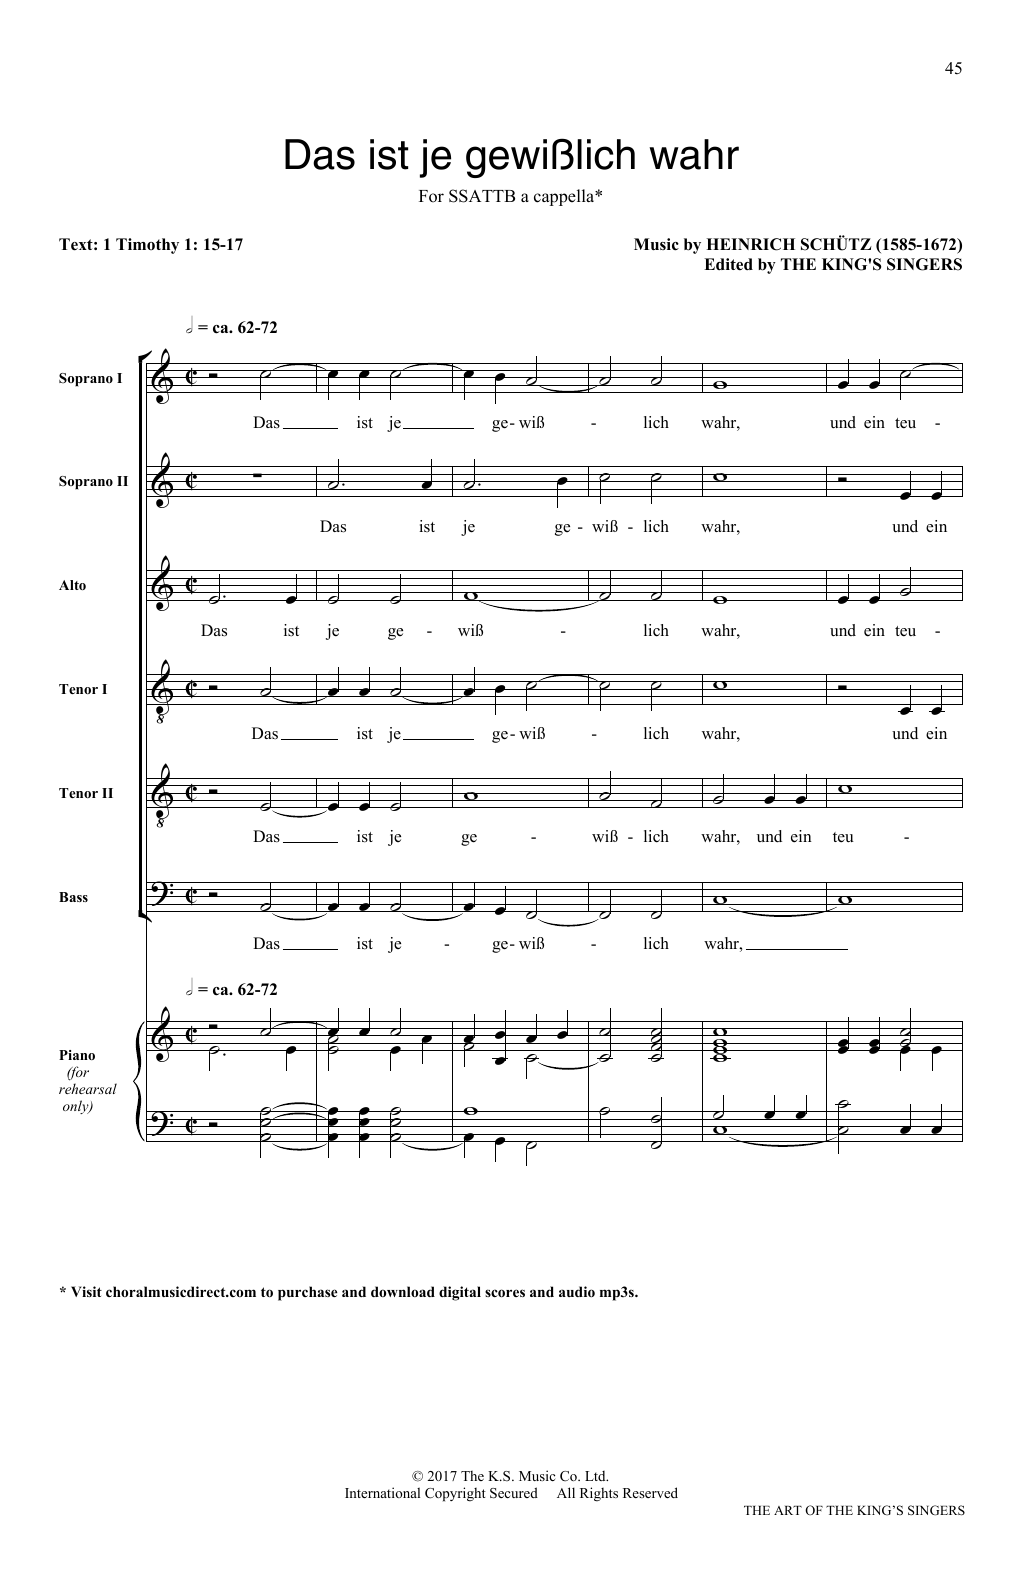 Heinrich Schutz Das ist je gewusslich wahr Sheet Music Notes & Chords for SATB - Download or Print PDF